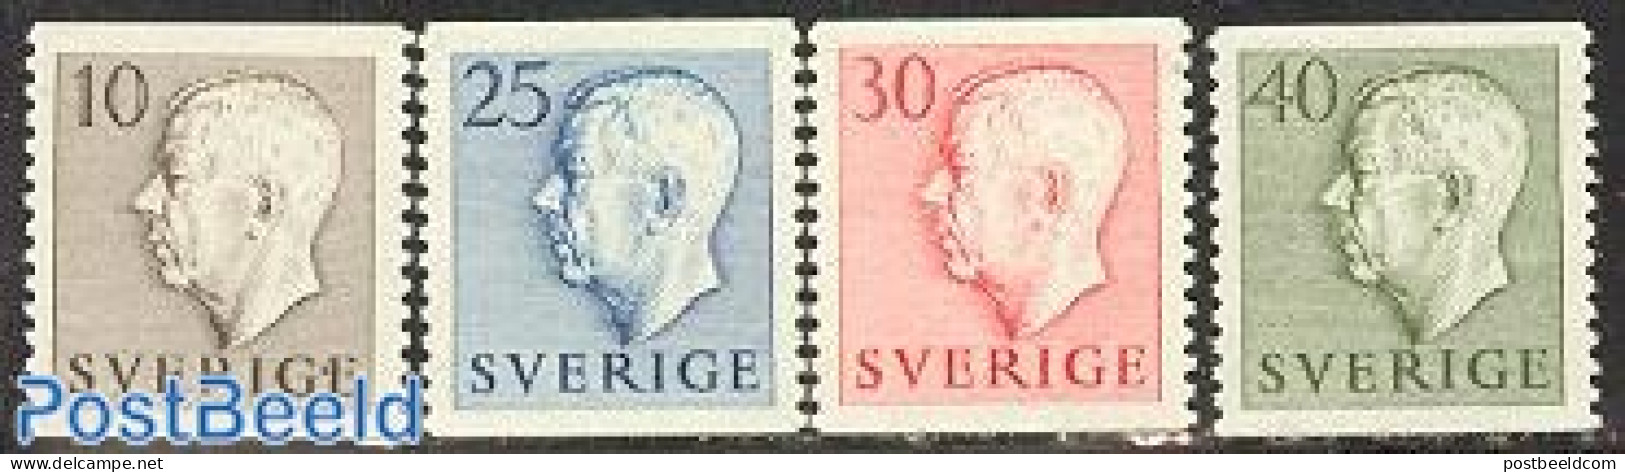 Sweden 1954 Definitives 4v, Mint NH - Nuovi